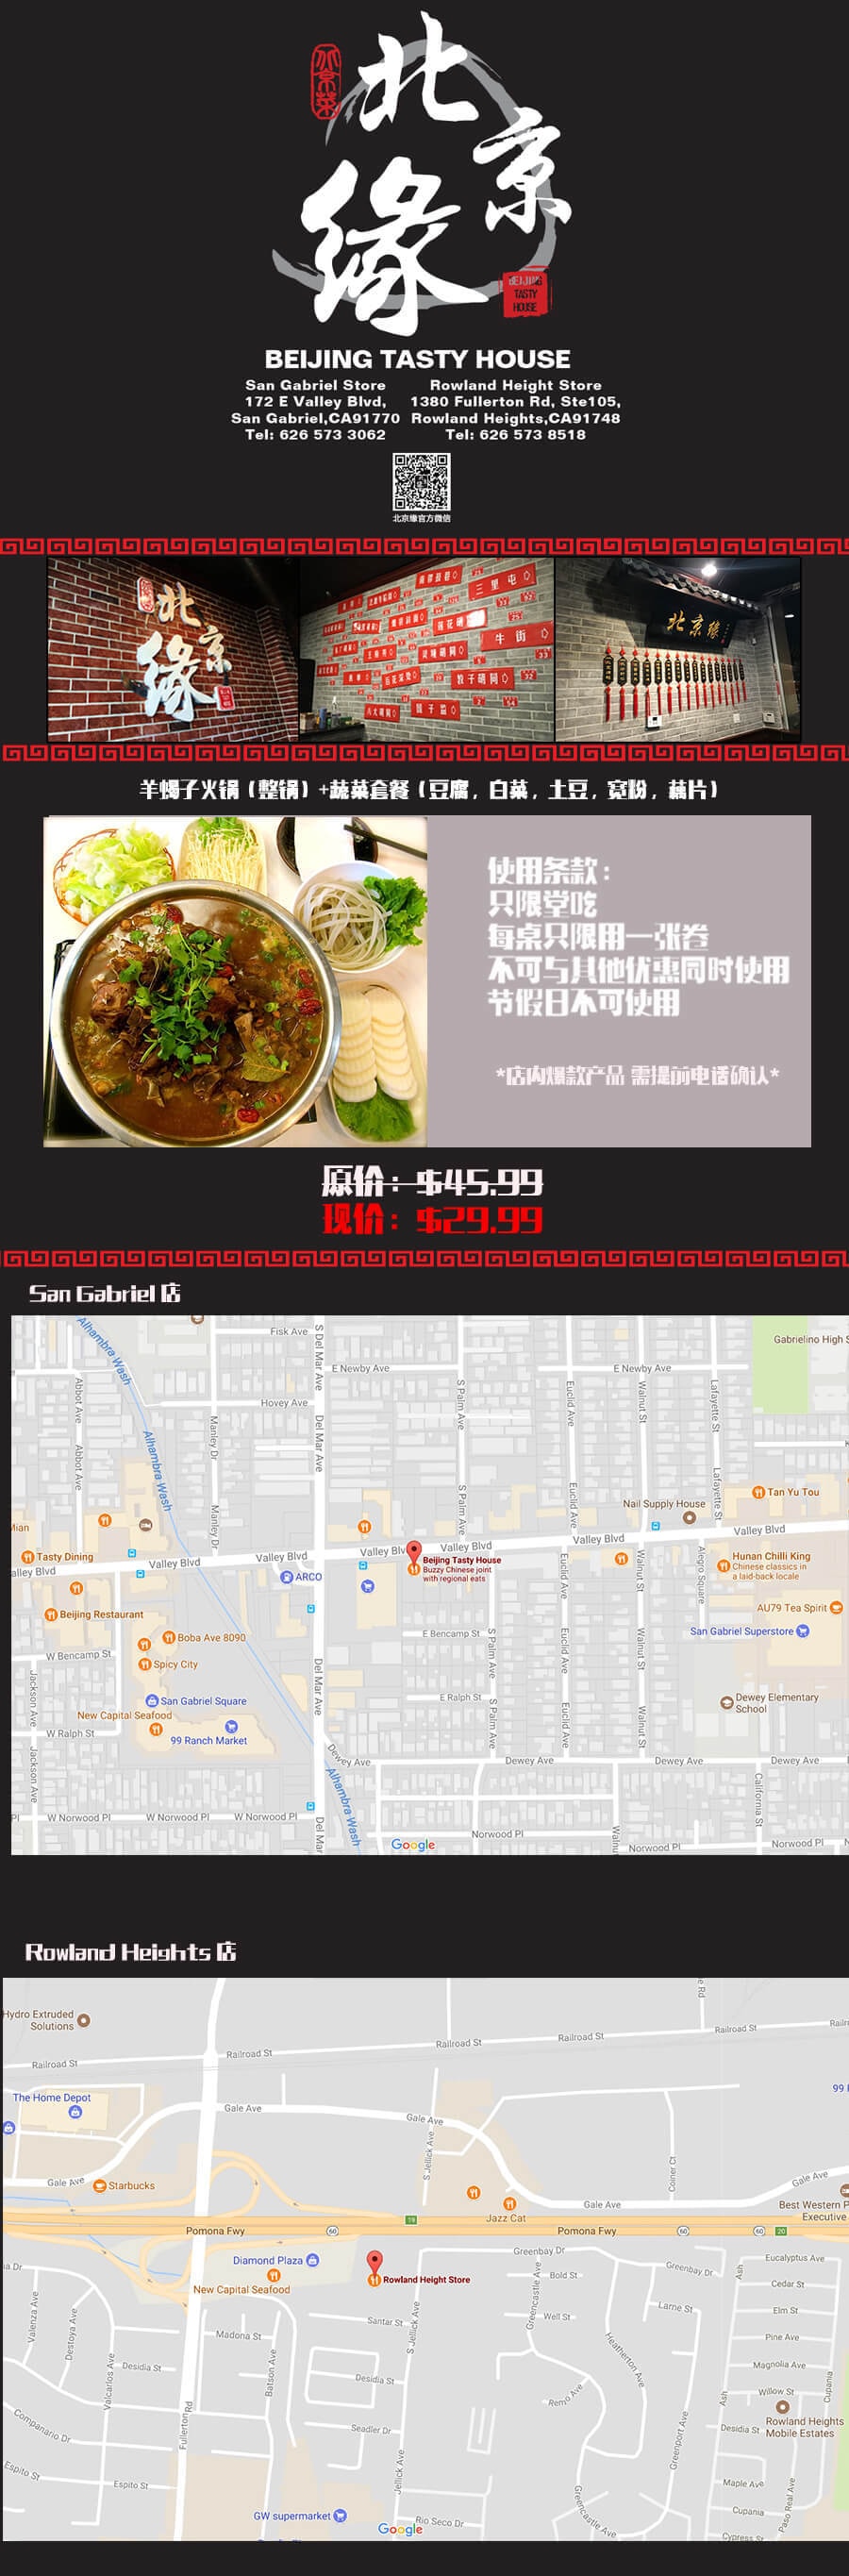 北京缘 羊蝎子火锅(整锅)+蔬菜套餐(豆腐、白菜、土豆宽粉、藕片) 原价$45.99 仅售$29.99